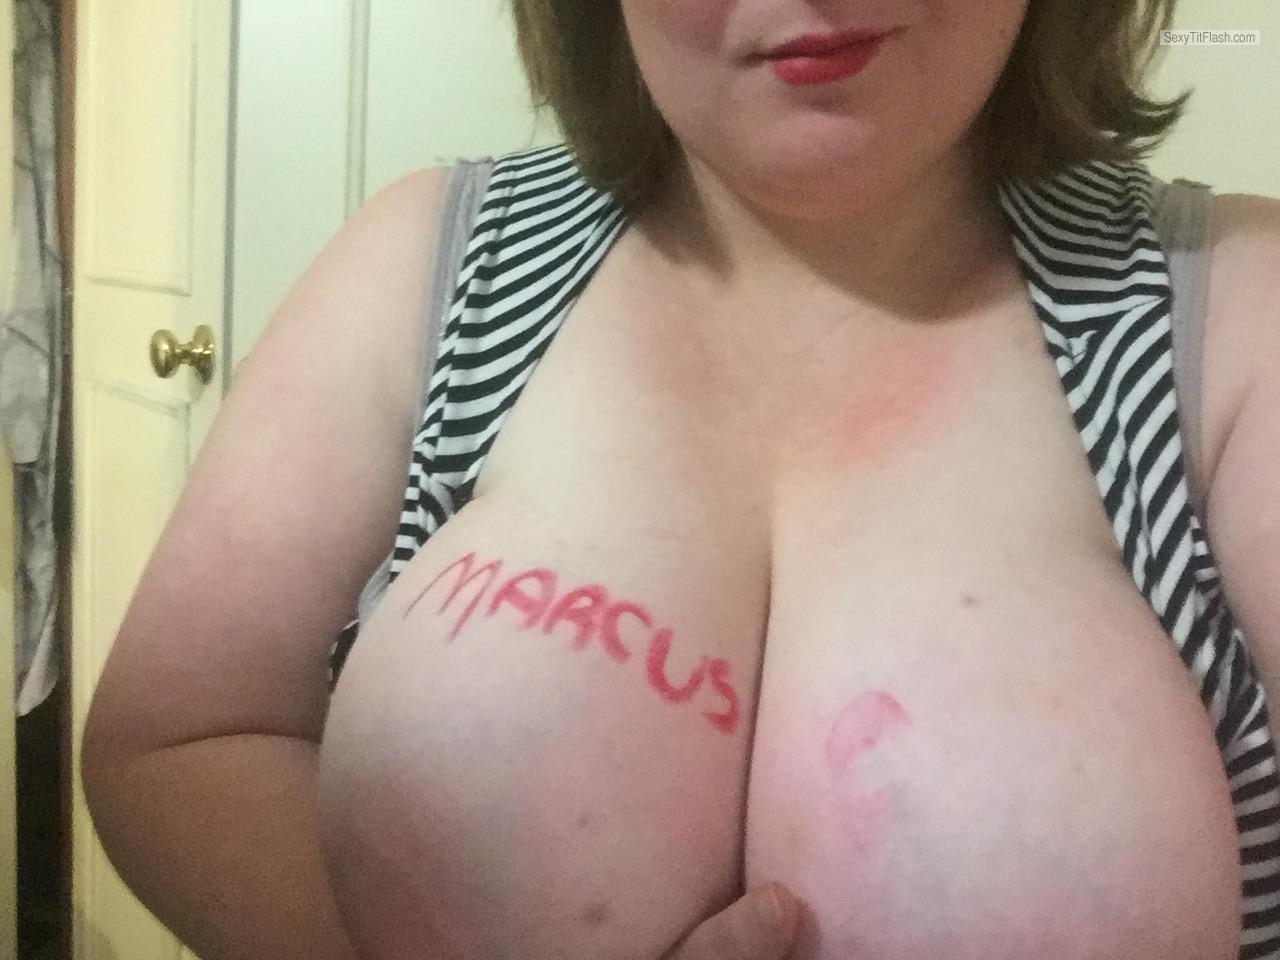 Tit Flash: My Very Big Tits (Selfie) - Juicy_girlxxx from Australia